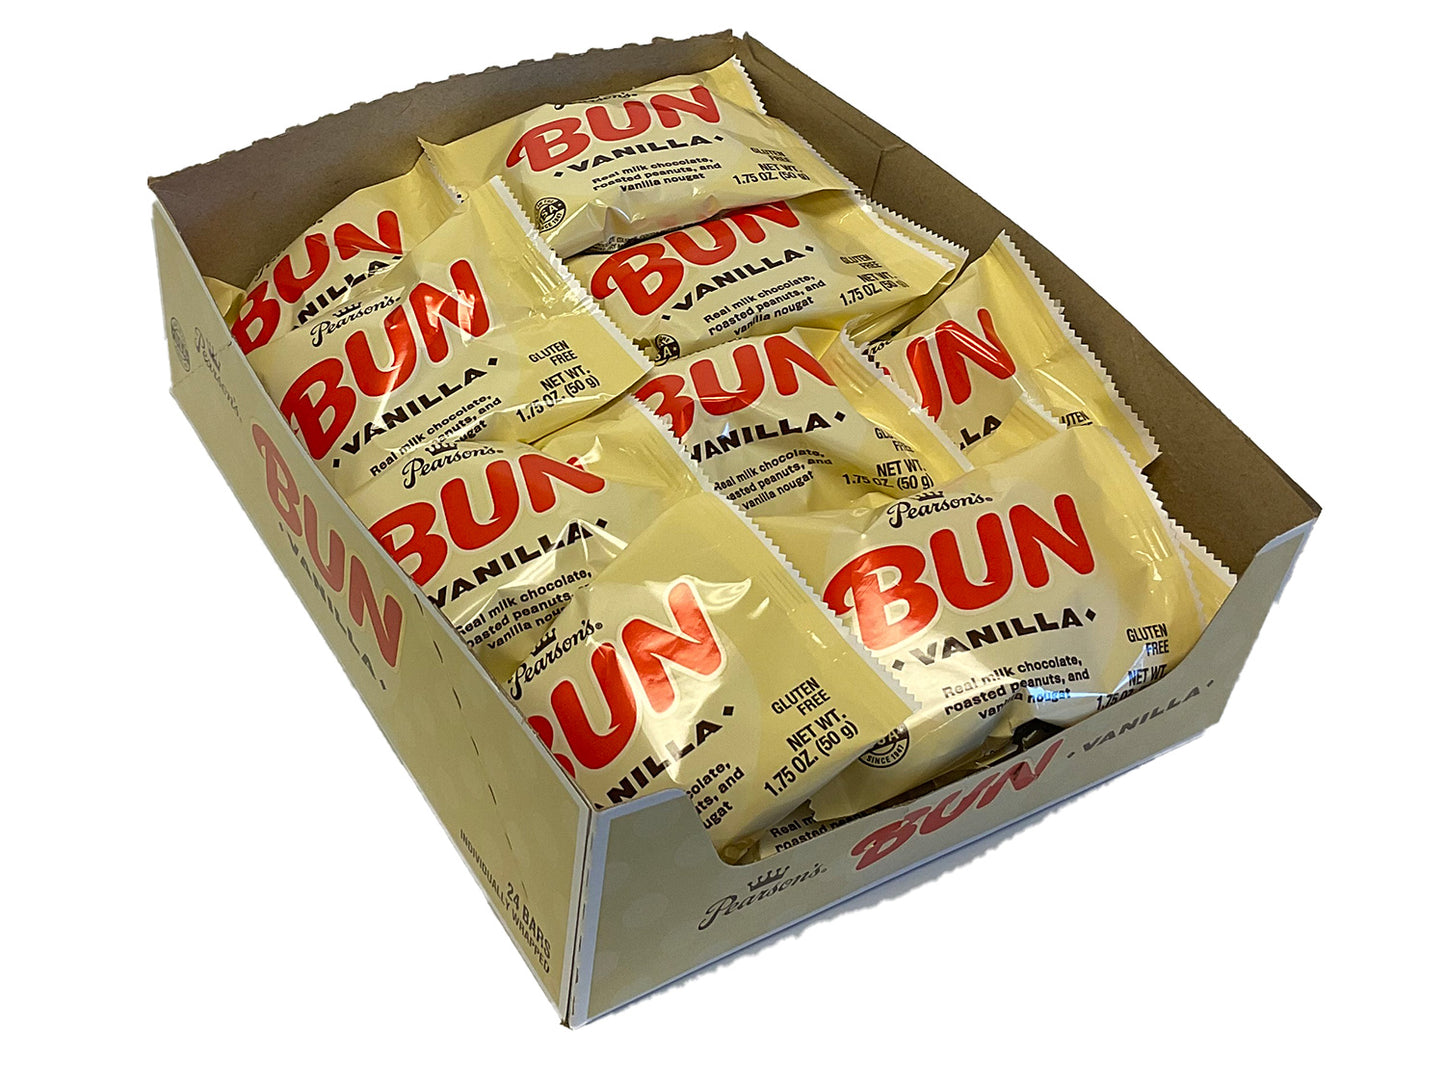 Bun - vanilla - 1.75 oz bar - box of 24 open